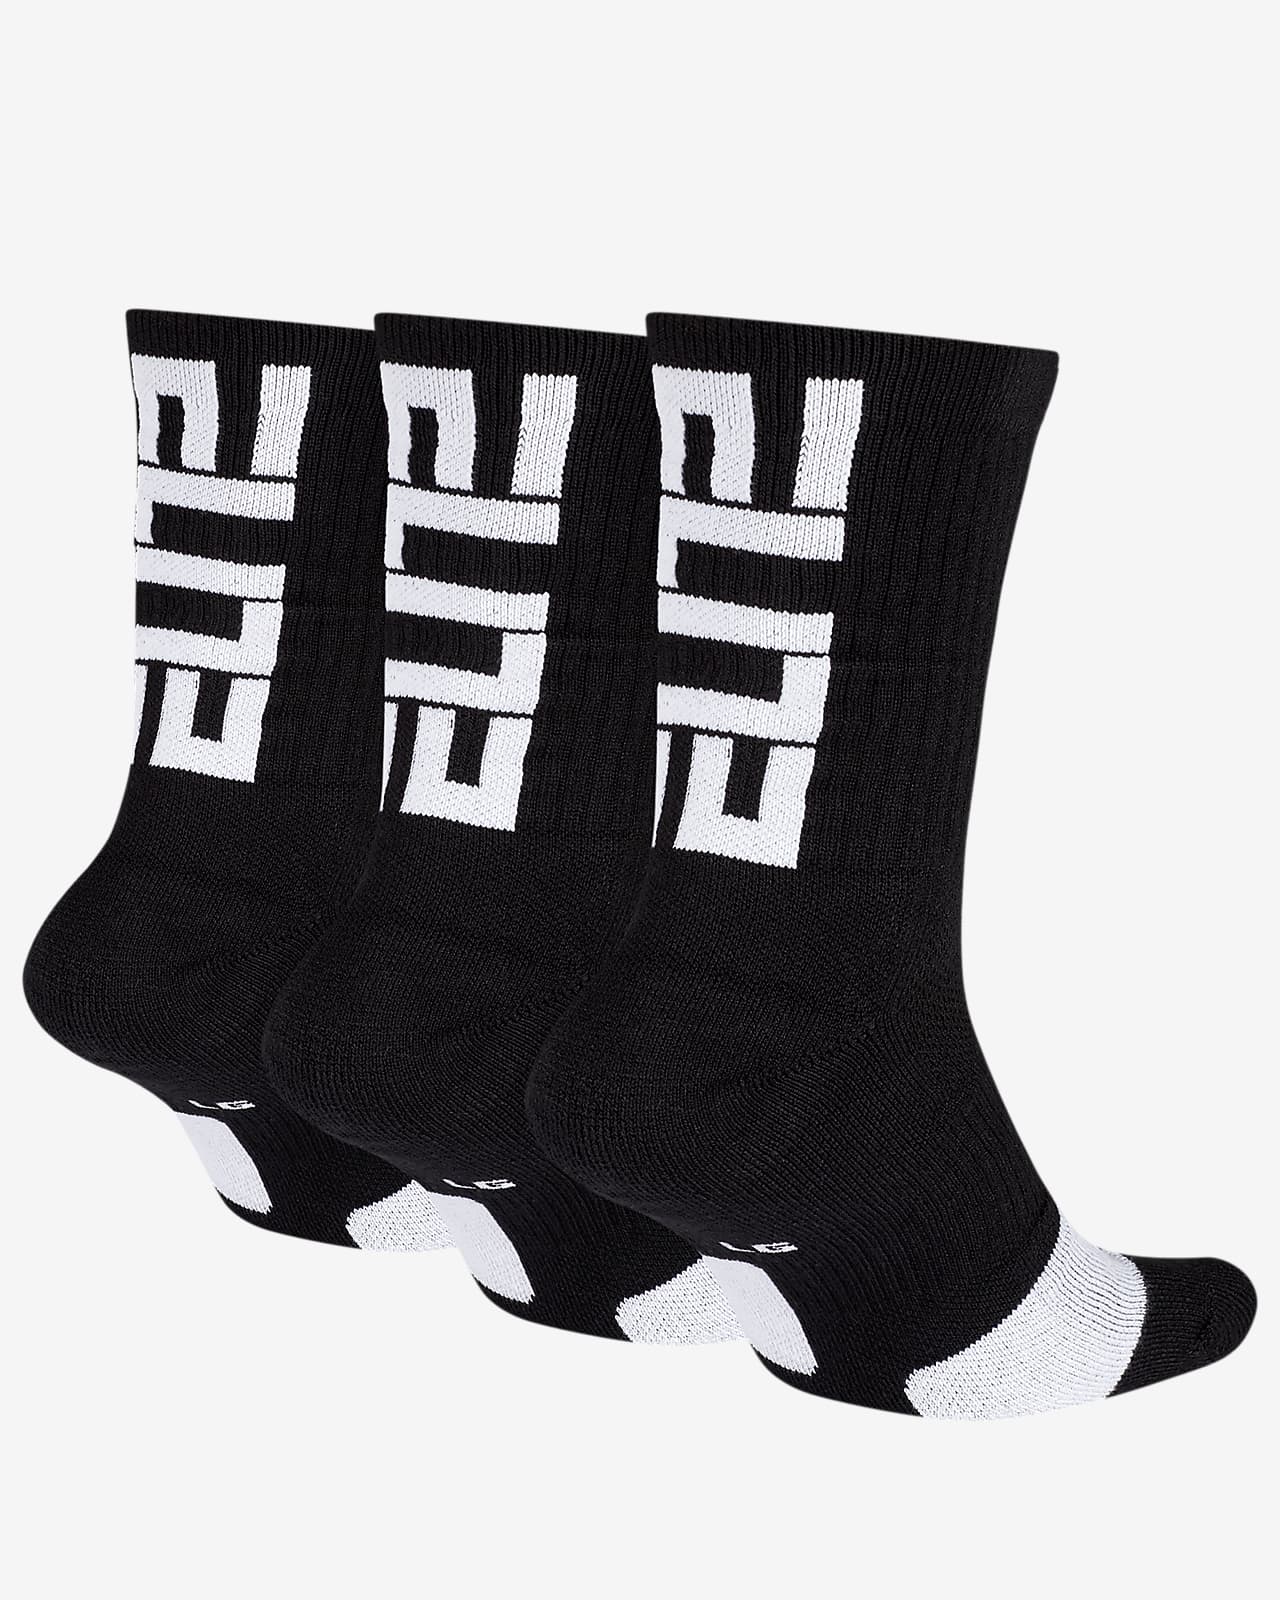 nikeid elite socks